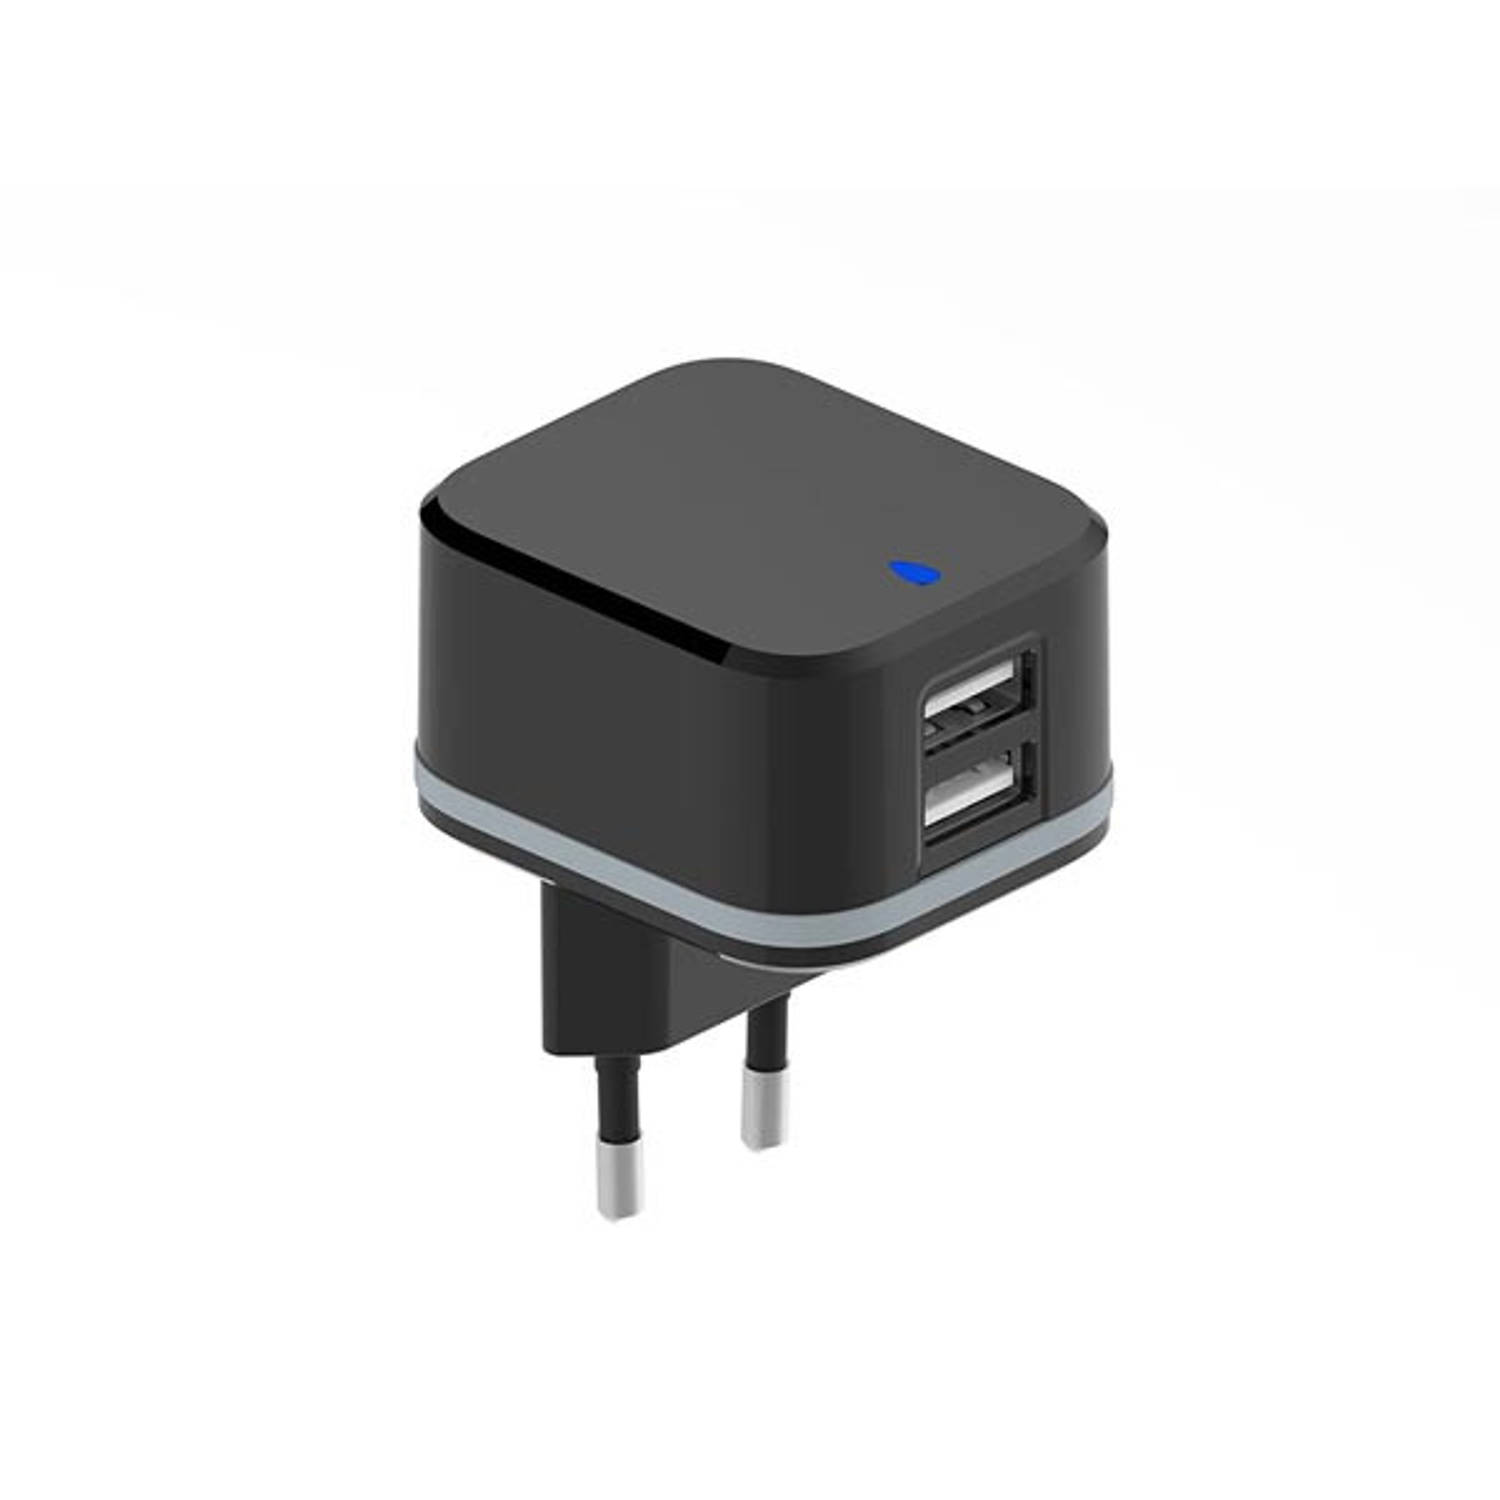 COMPACTE LADER MET 2 USB-AANSLUITINGEN - 5 V - 4.8 A max. - 24 W max. - ZWART